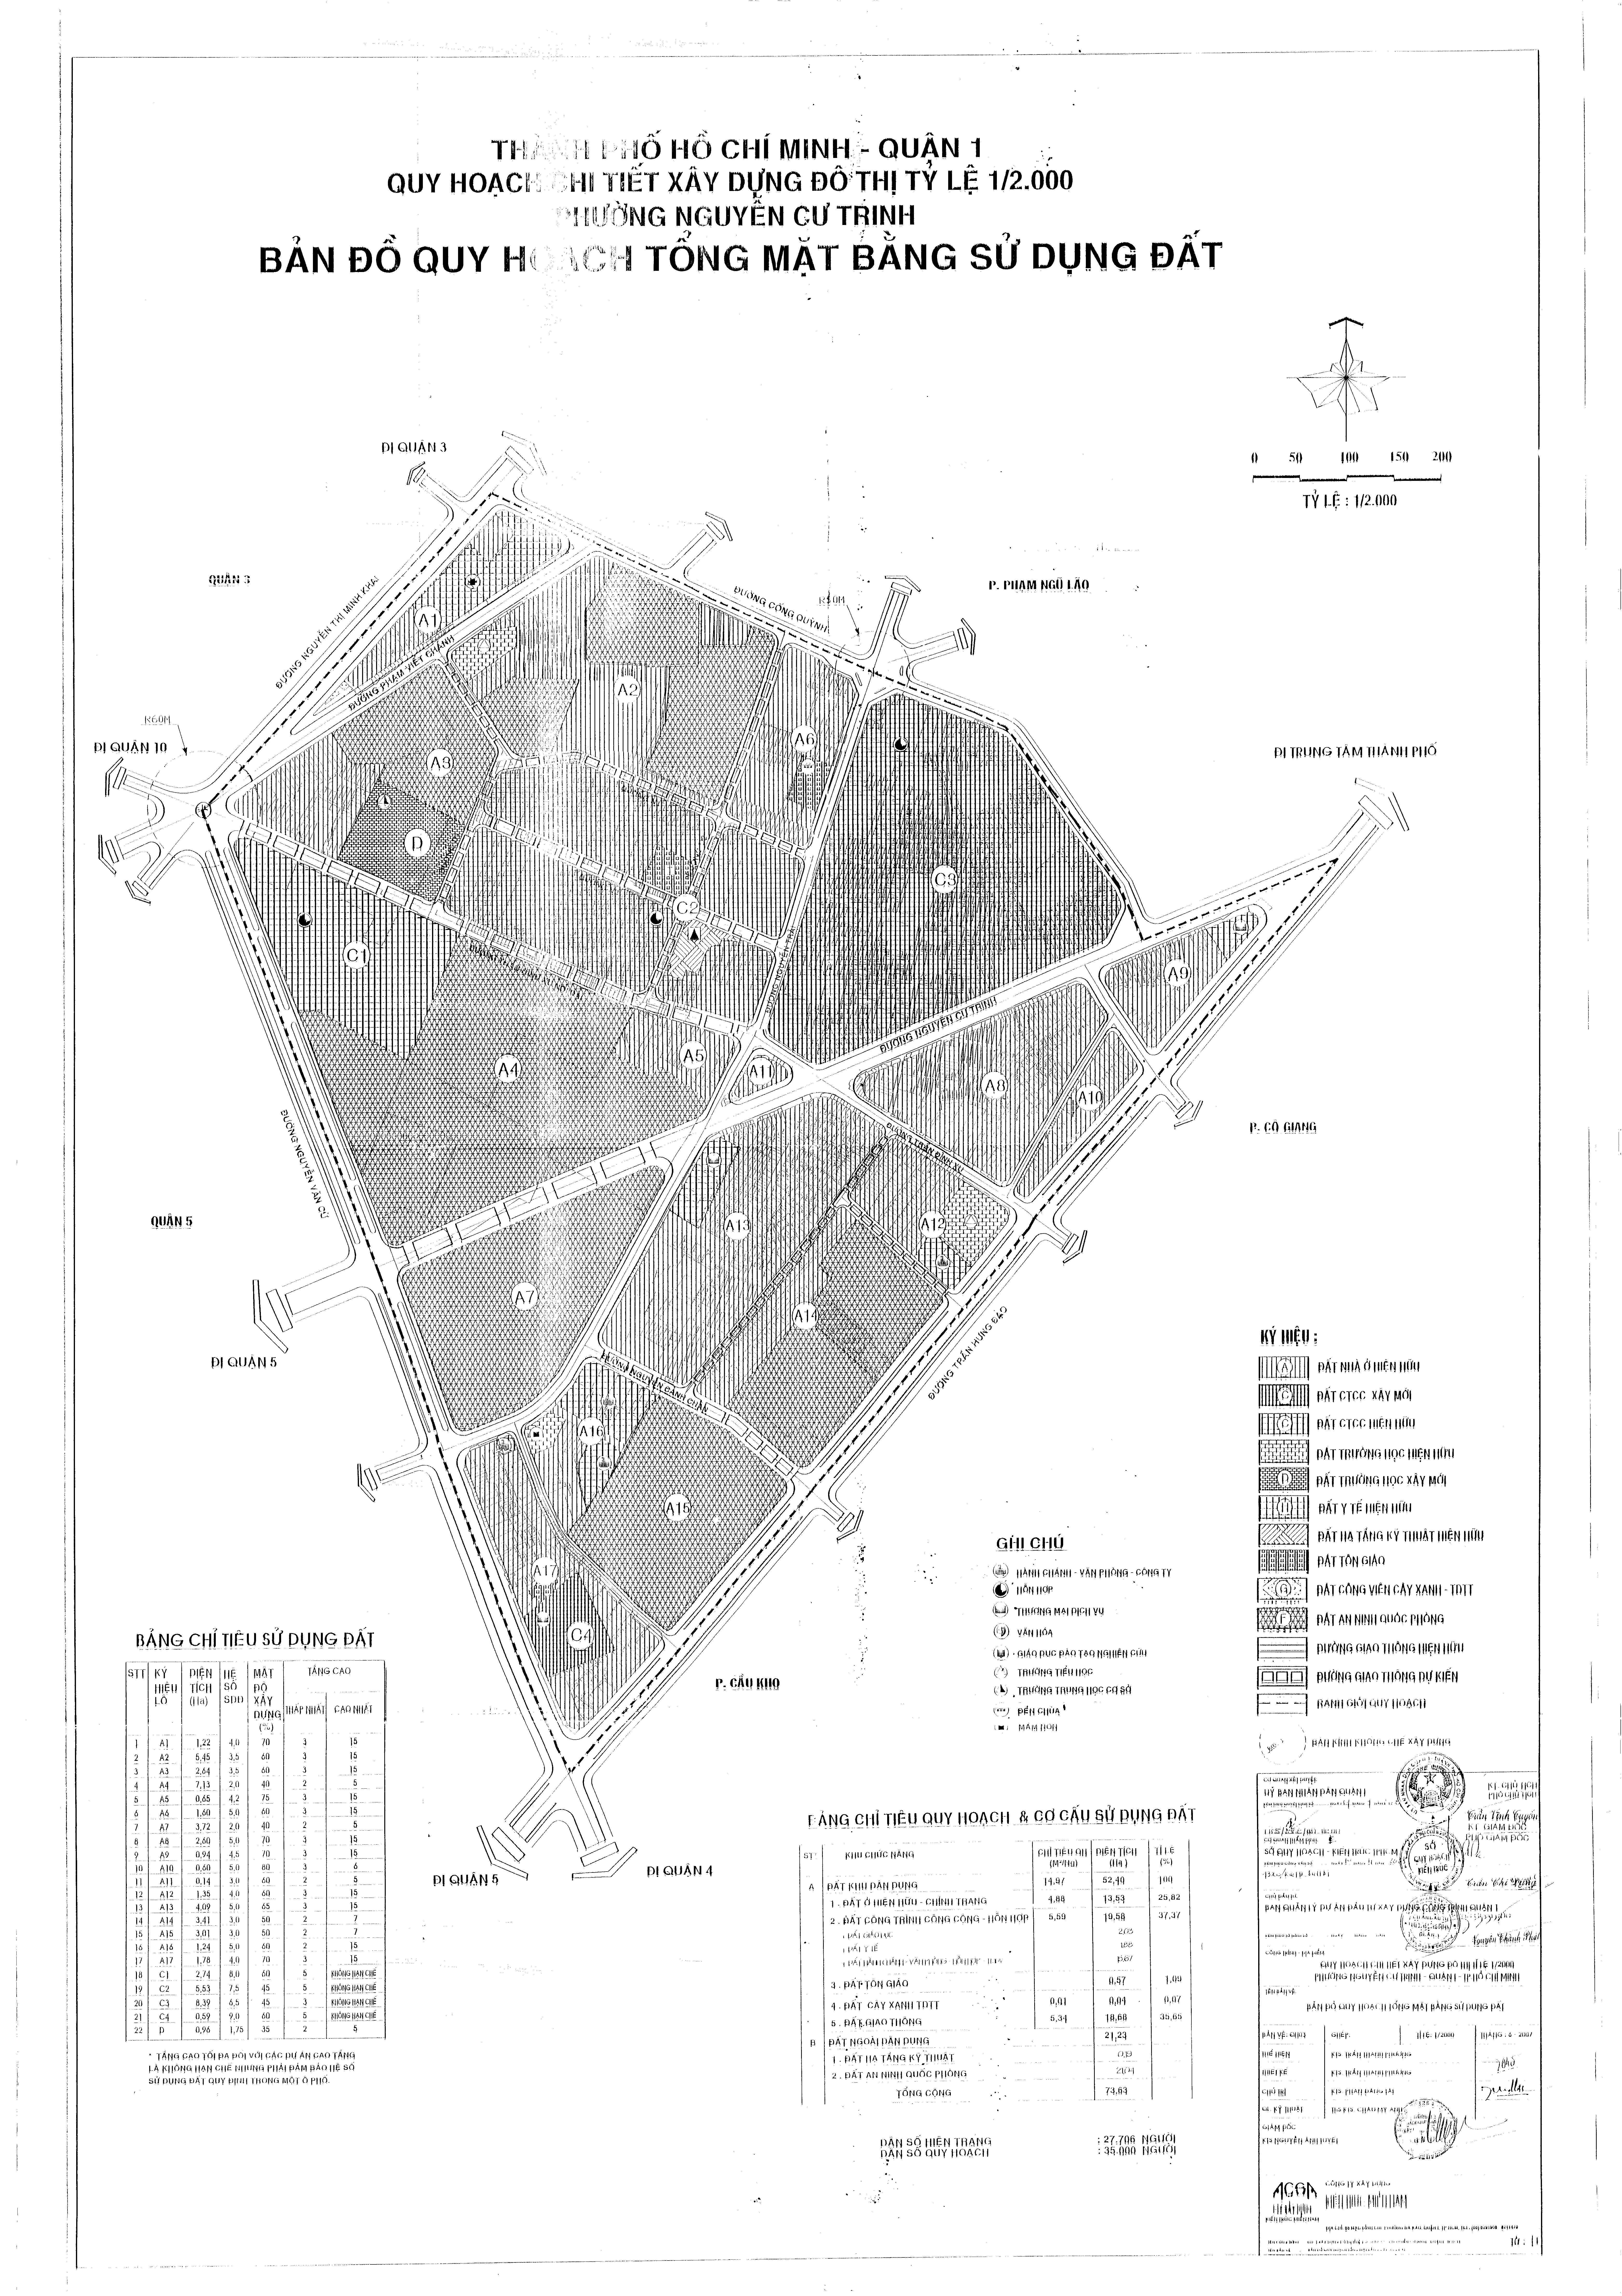 Bản đồ quy hoạch 1/2000 phường Nguyễn Cư Trinh, Quận 1